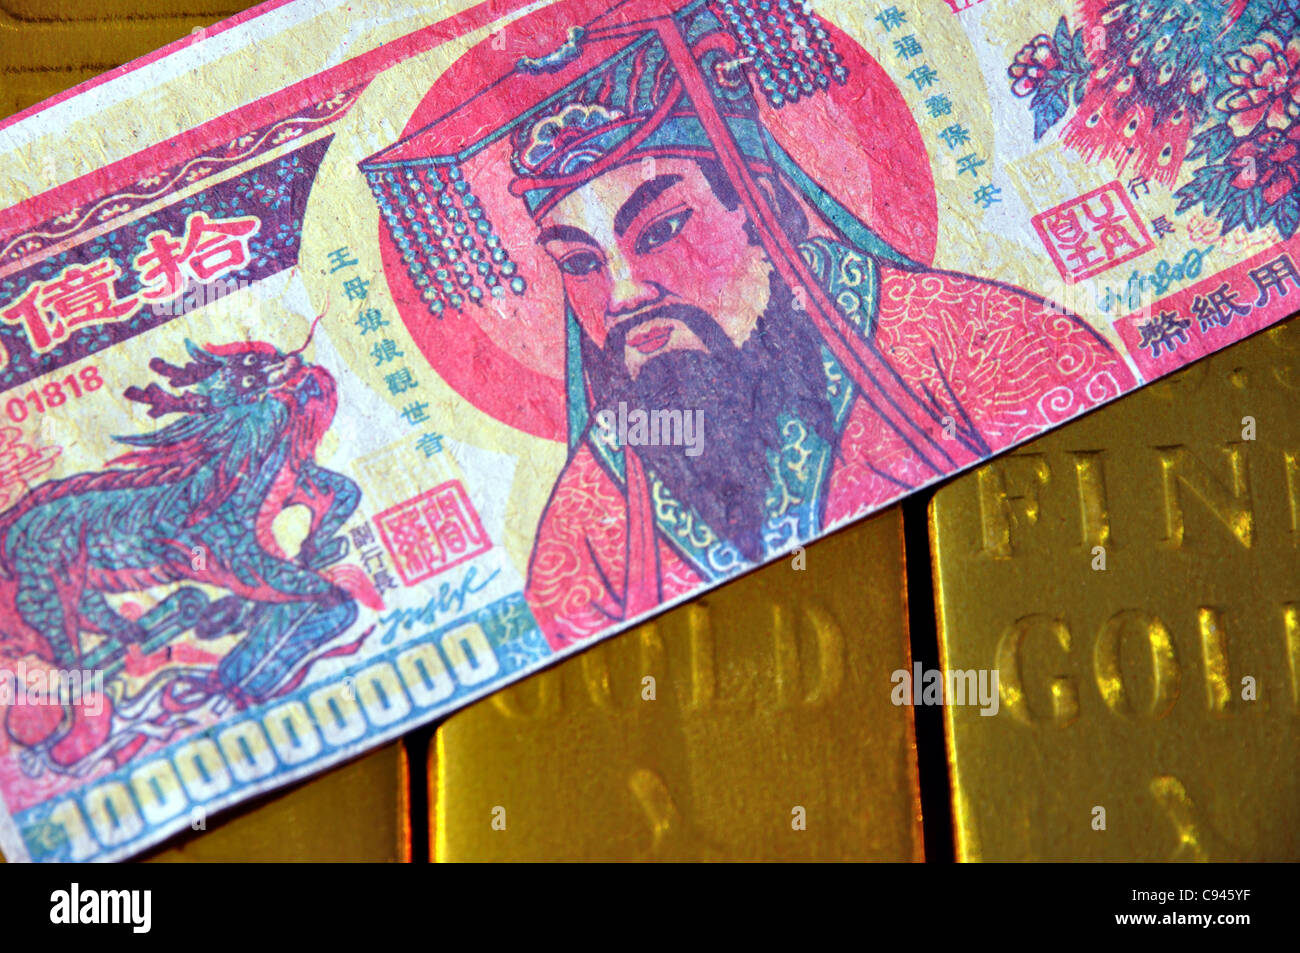 Offerte di denaro di riproduzione e Gold bullion per ricordare i morti, Dalian, Liaoning, Cina. Foto Stock